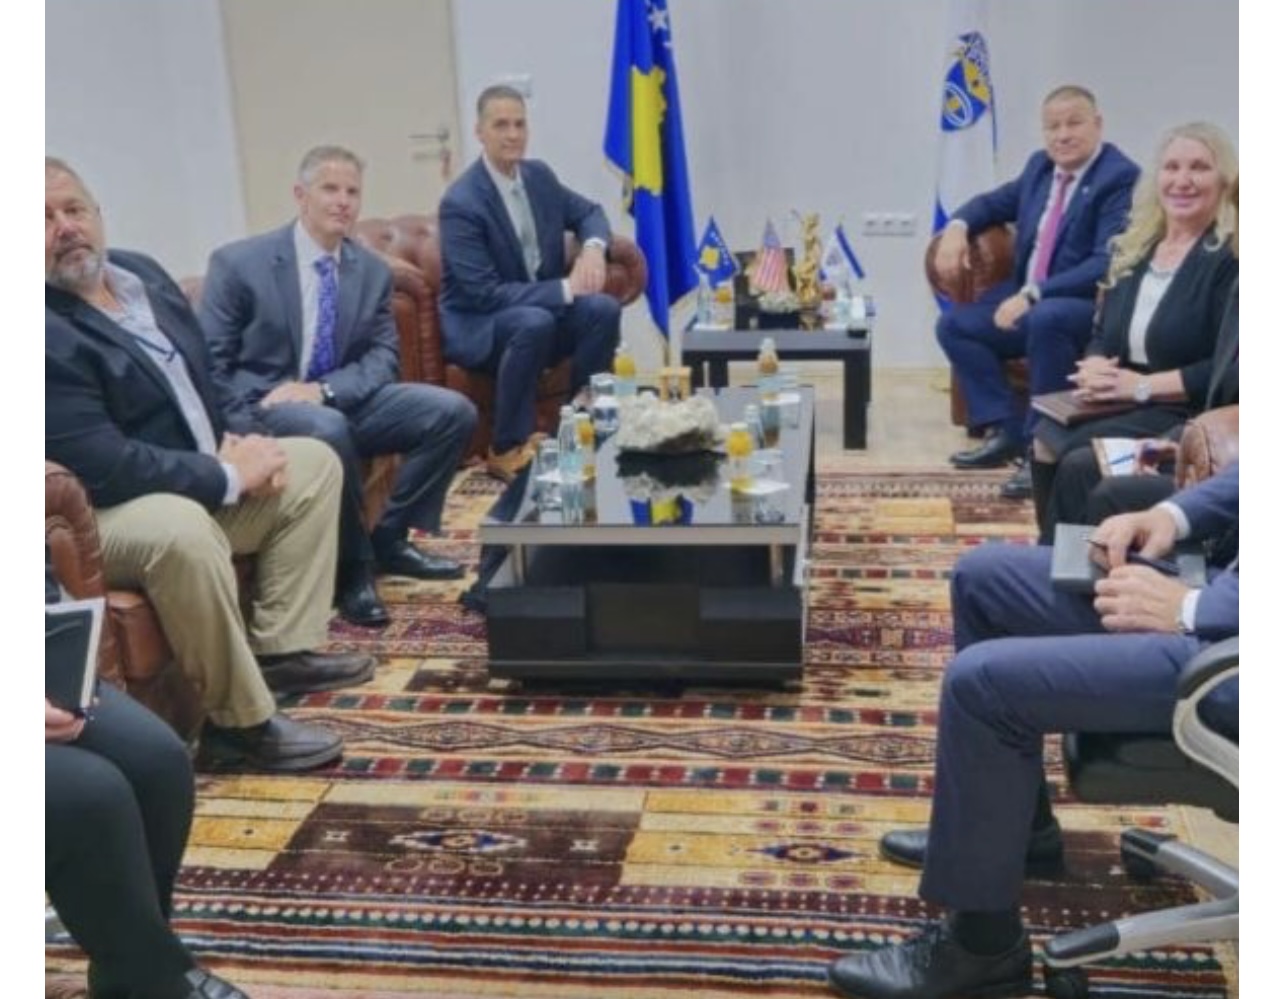  Pajisje të vogla   Shërbimi sekret amerikan takohet me Policinë e Kosovës